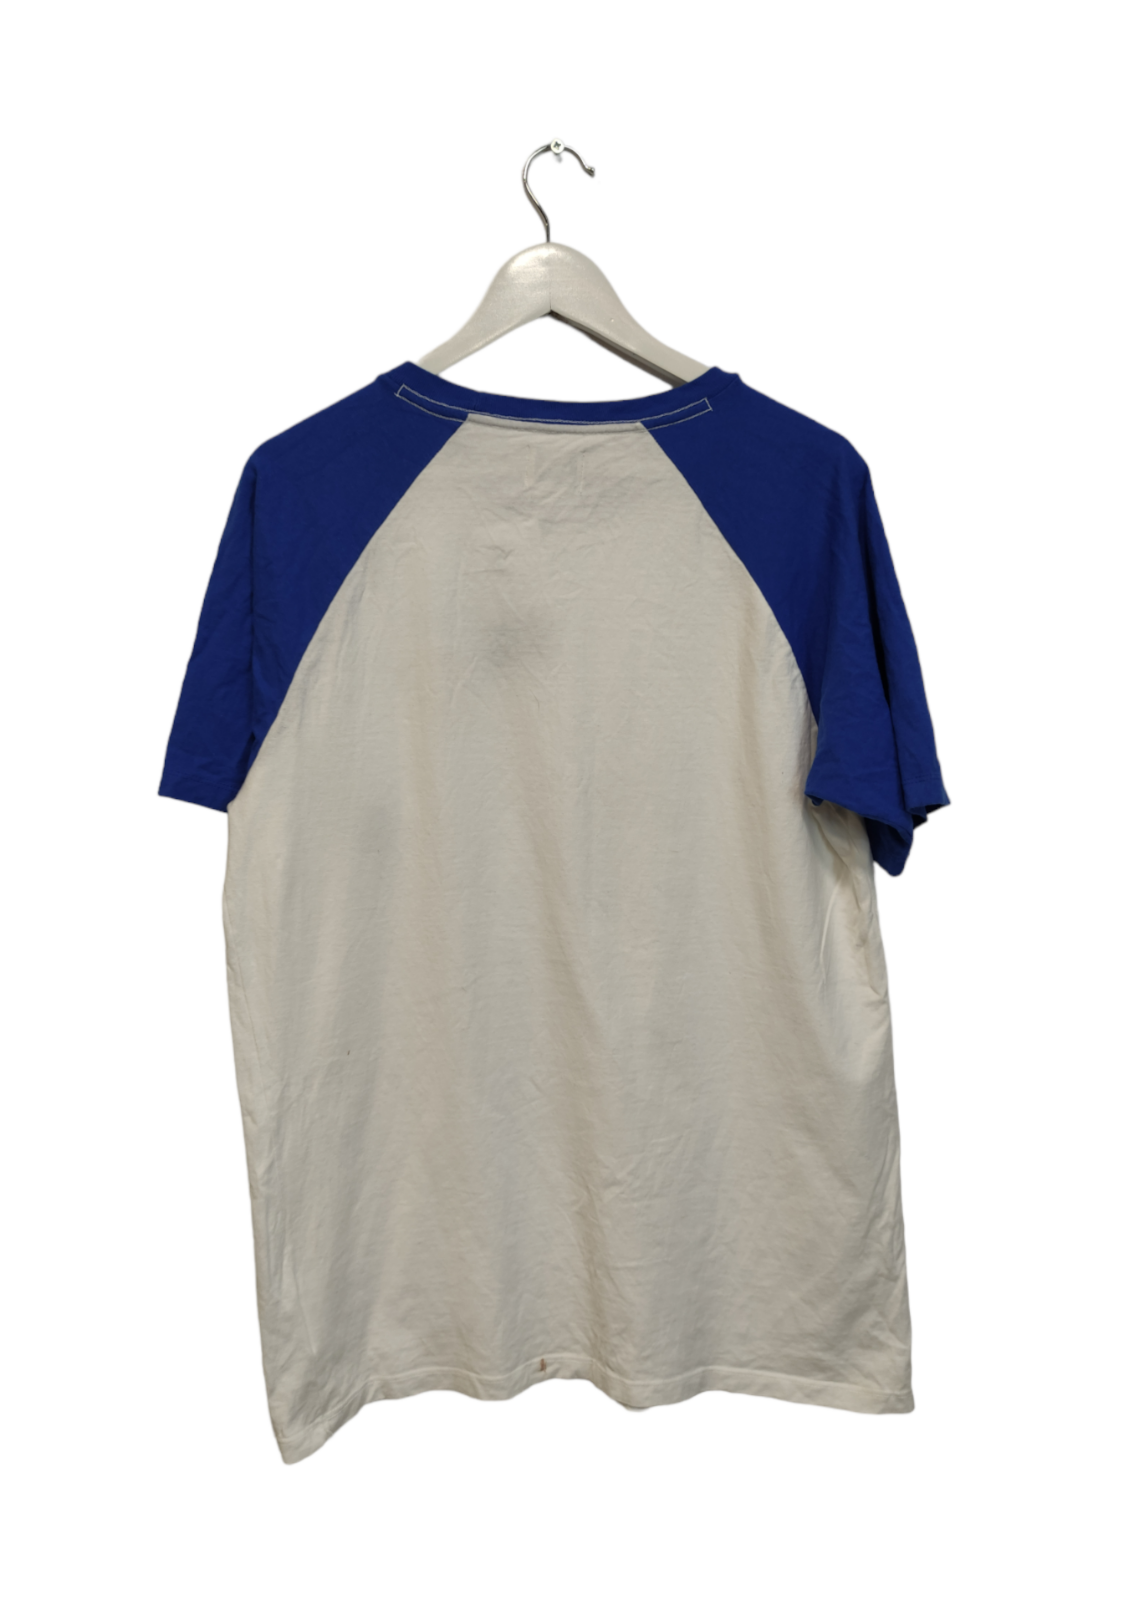 Ανδρική Μπλούζα - T-Shirt DISNEY σε Λευκό - Μπλε χρώμα (Medium)